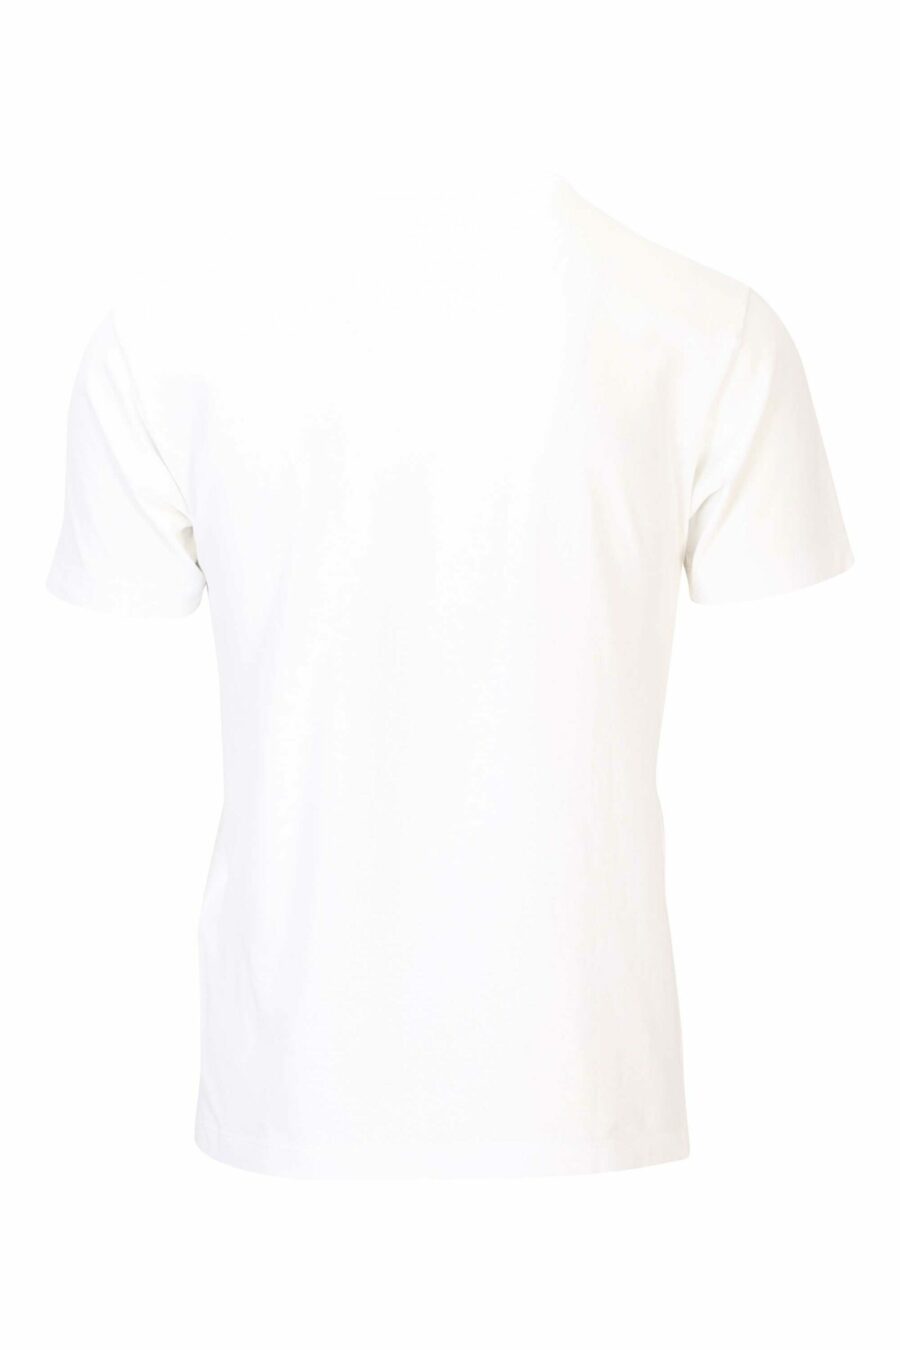 Camiseta blanca con maxilogo circular frontal - 8052572742361 2 scaled